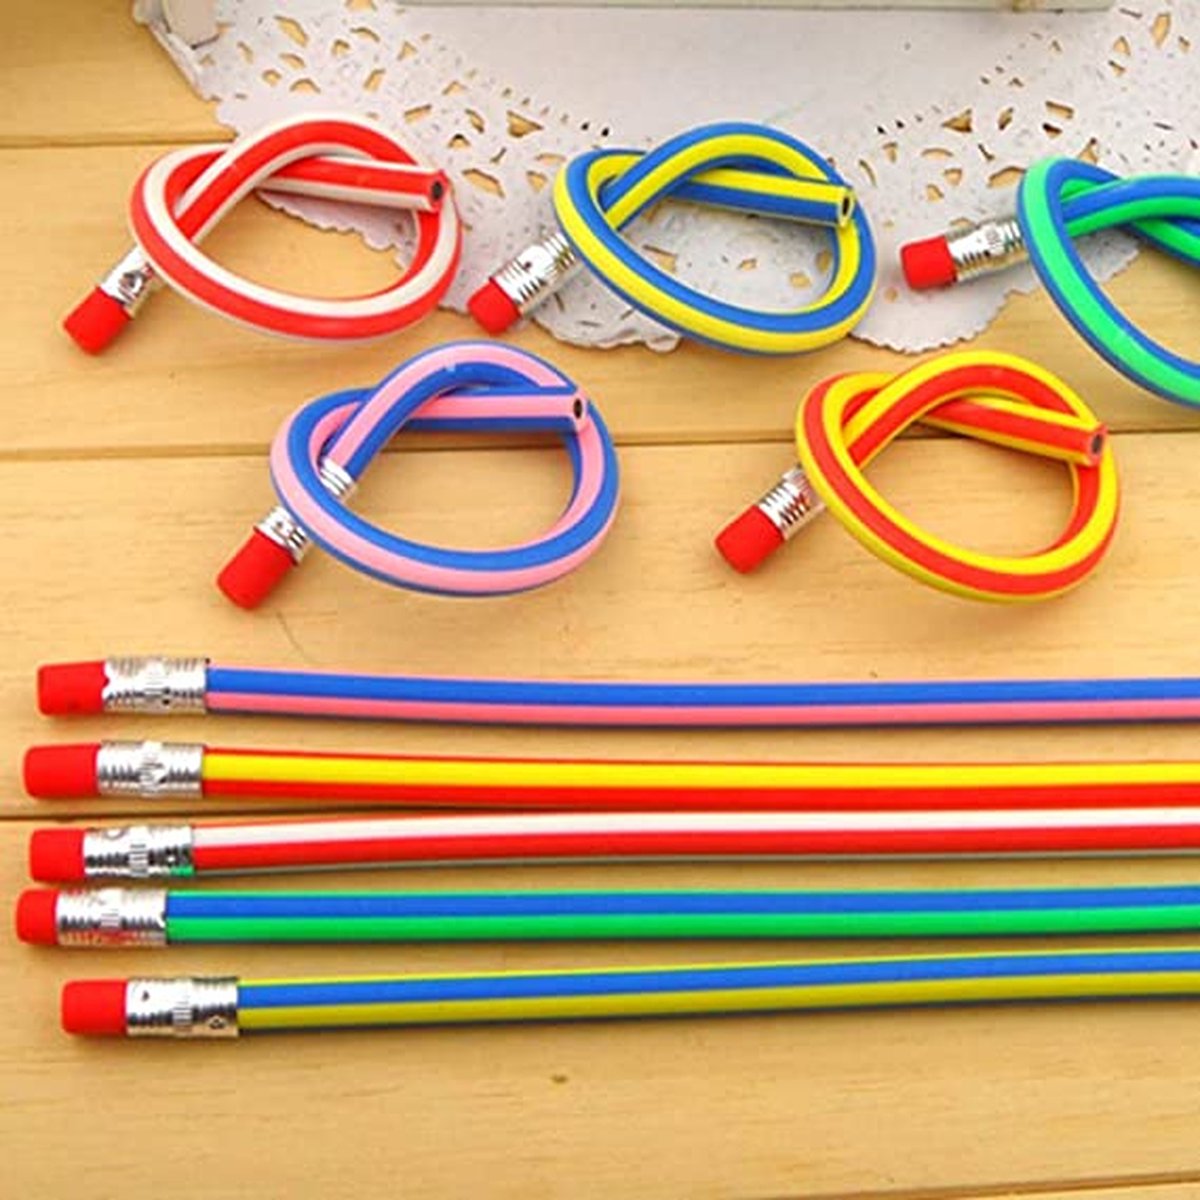 flexibele Bendy potloden, magische Bend potloden voor kinderen, flexible bendy pencils 50